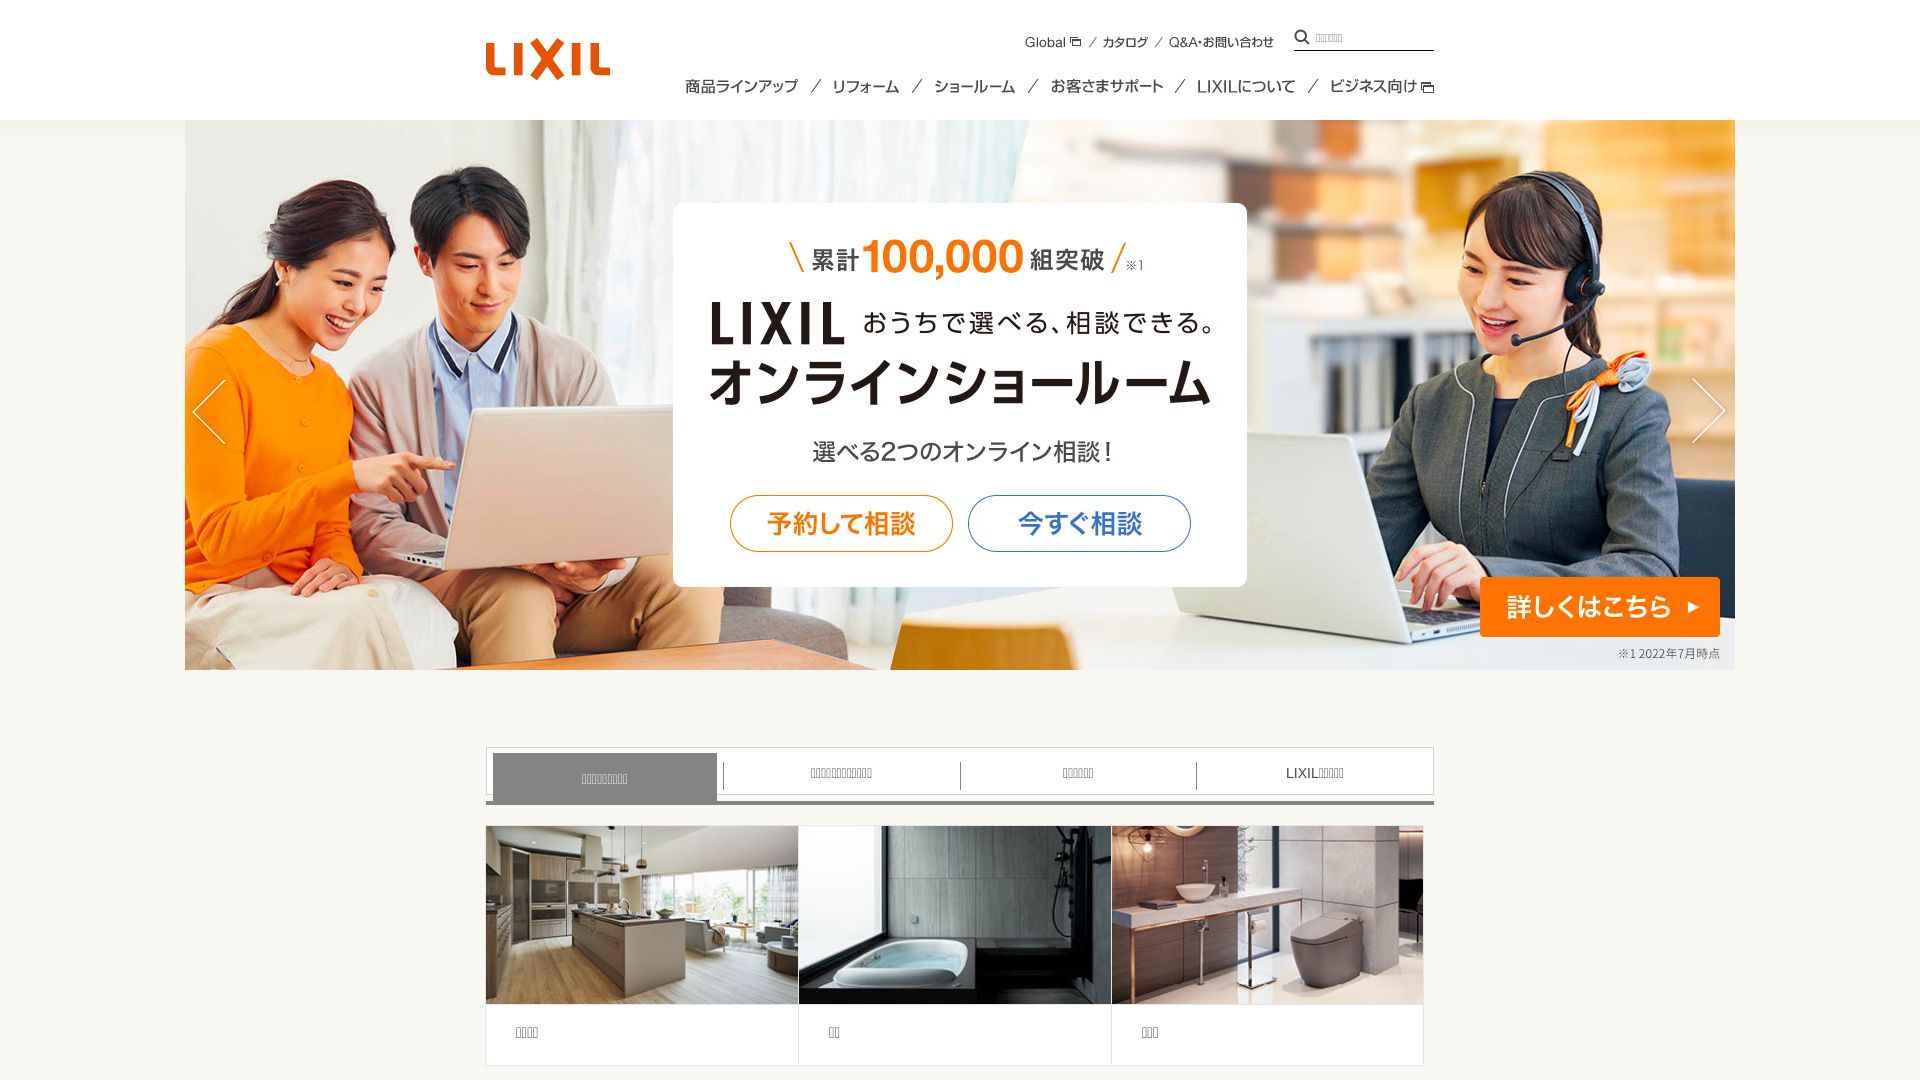 вебсайт lixil.co.jp Є   ONLINE